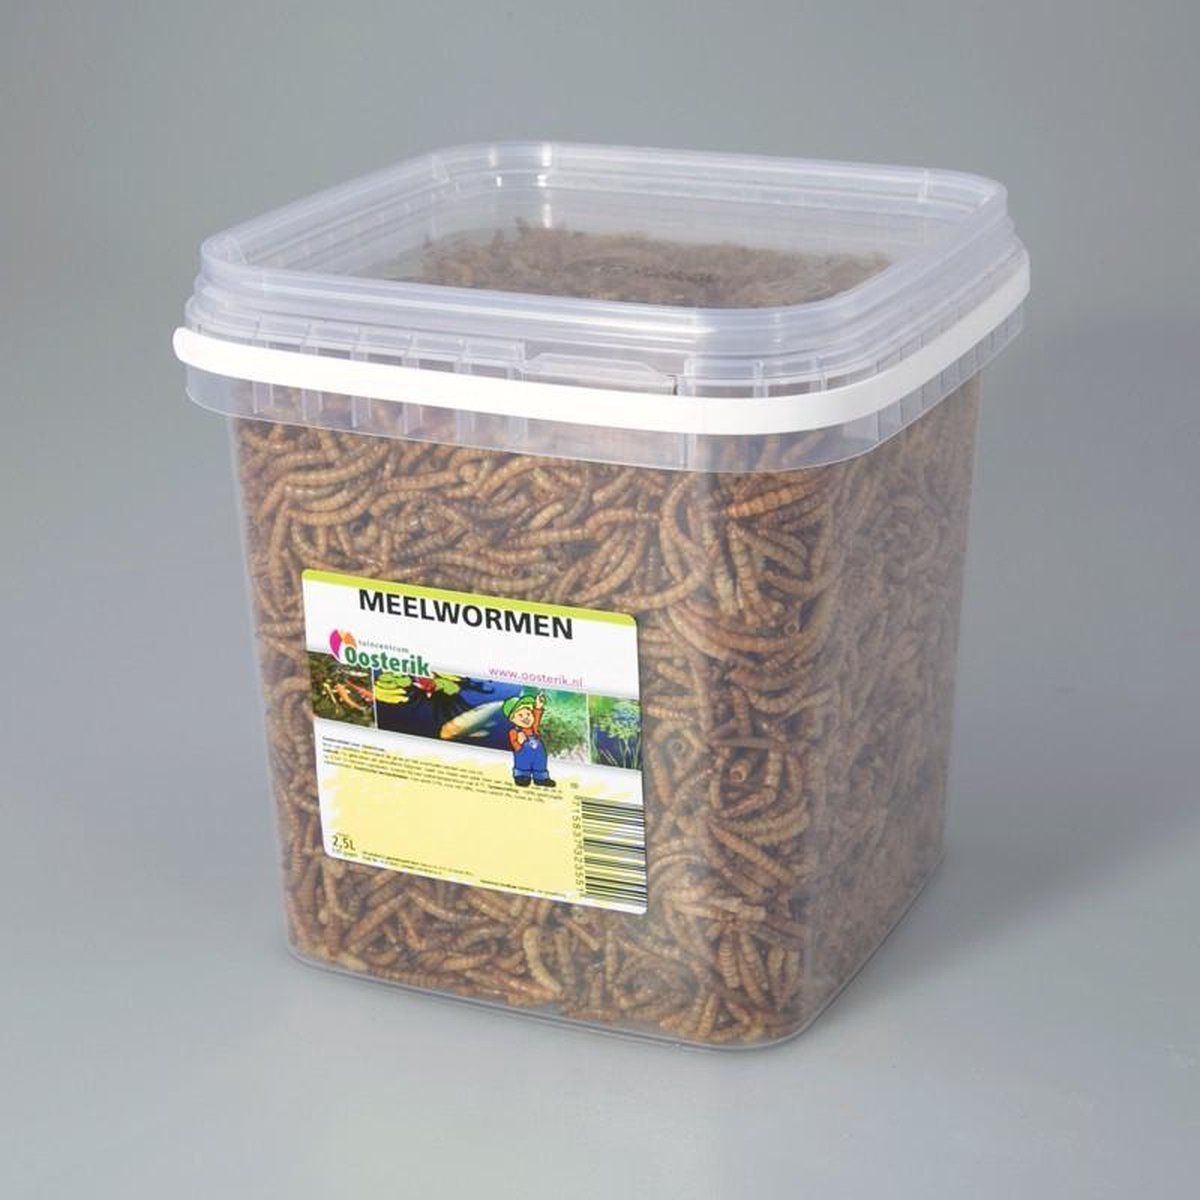 Meelwormen 2.5 liter